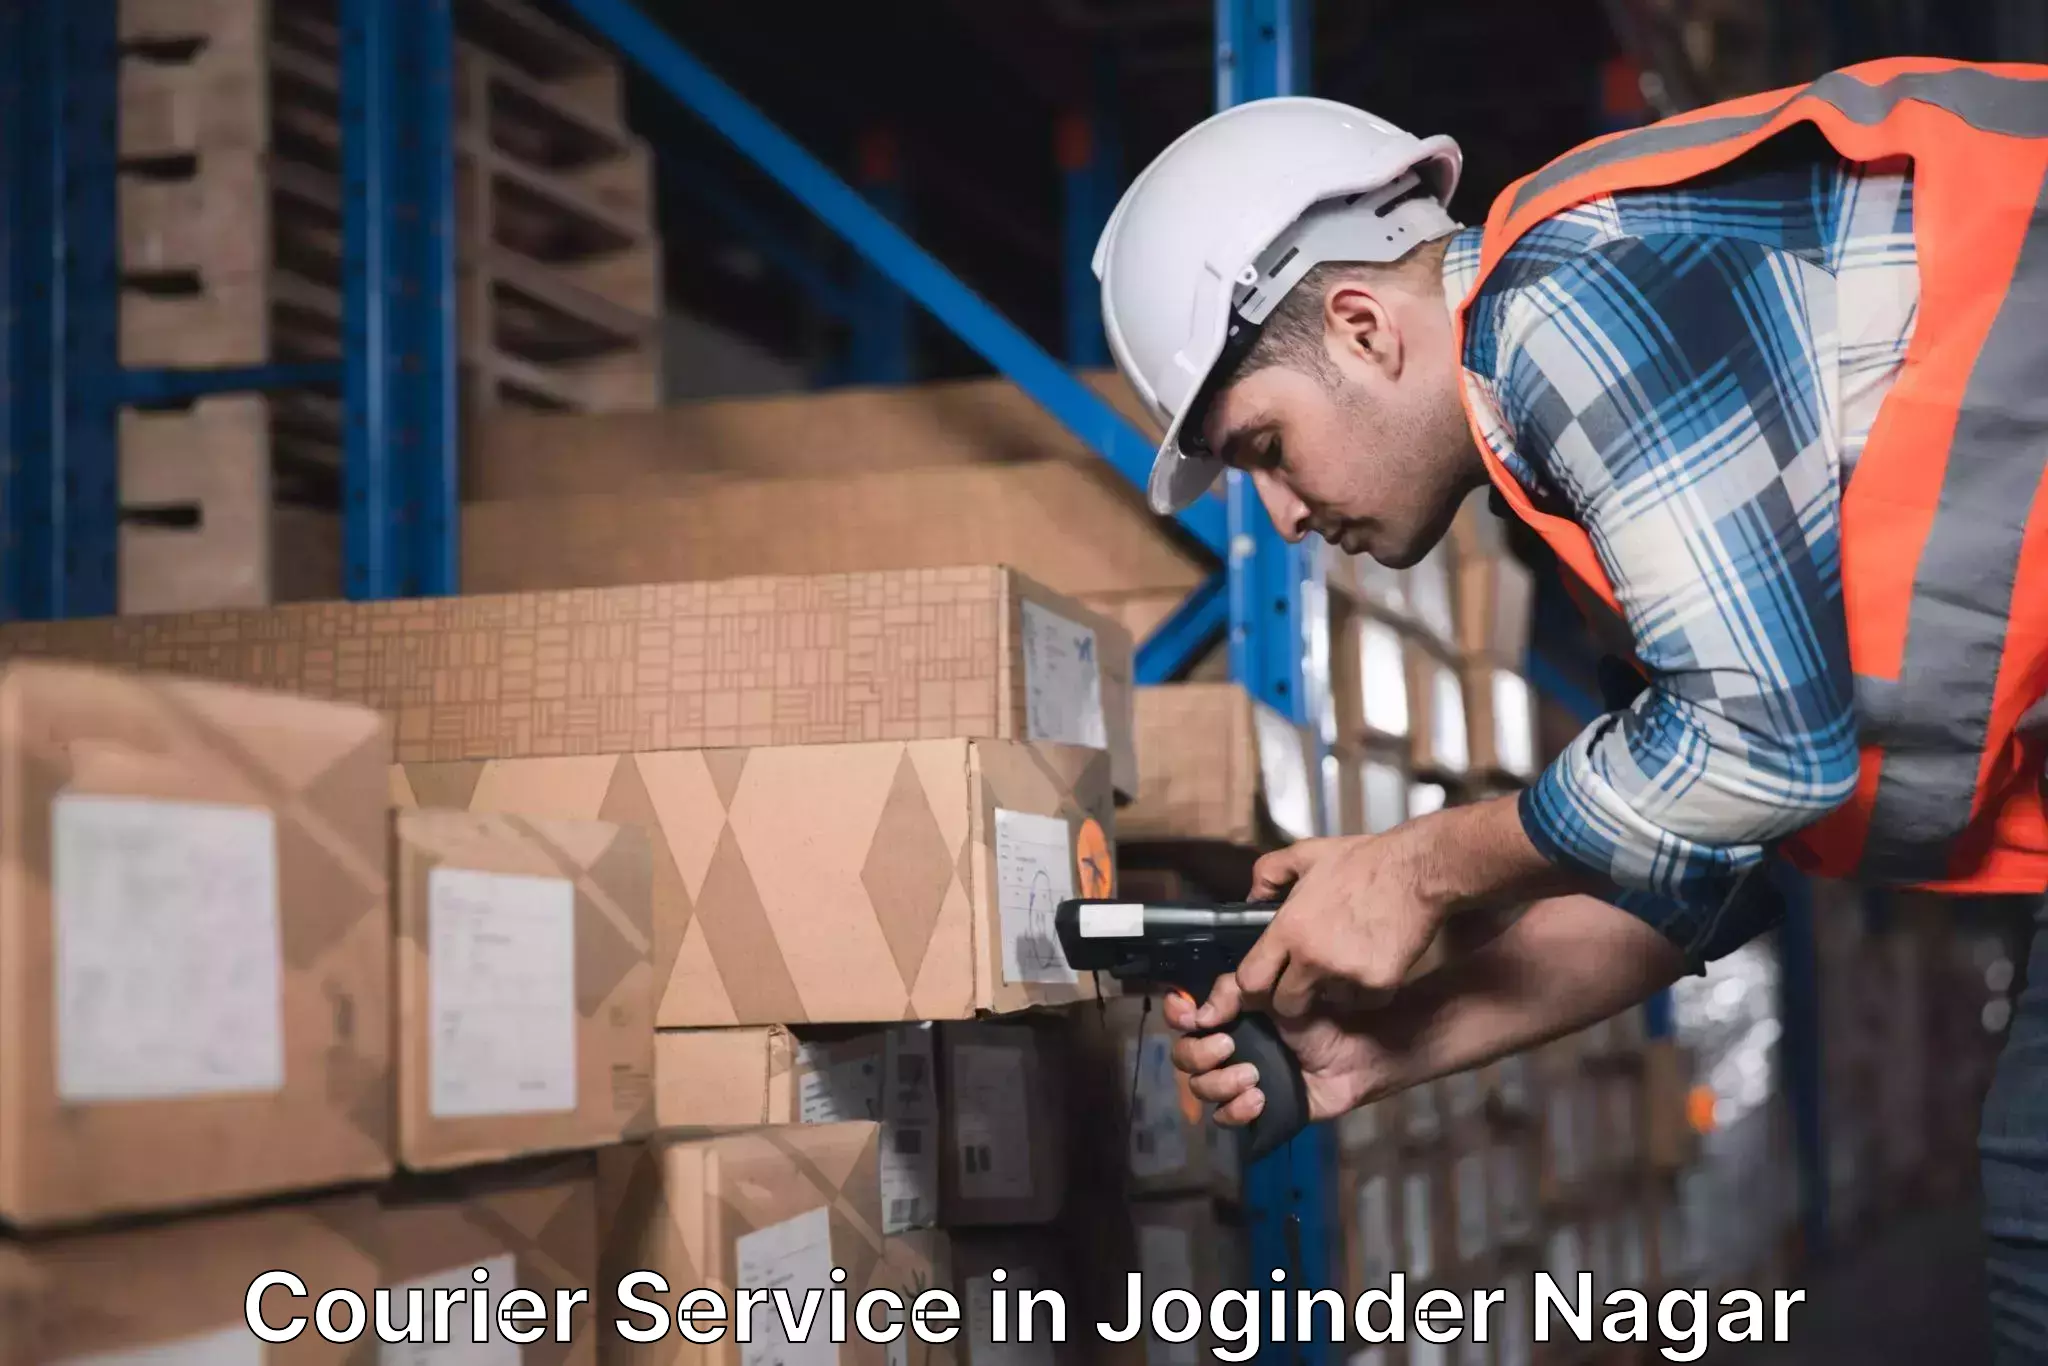 Diverse delivery methods in Joginder Nagar